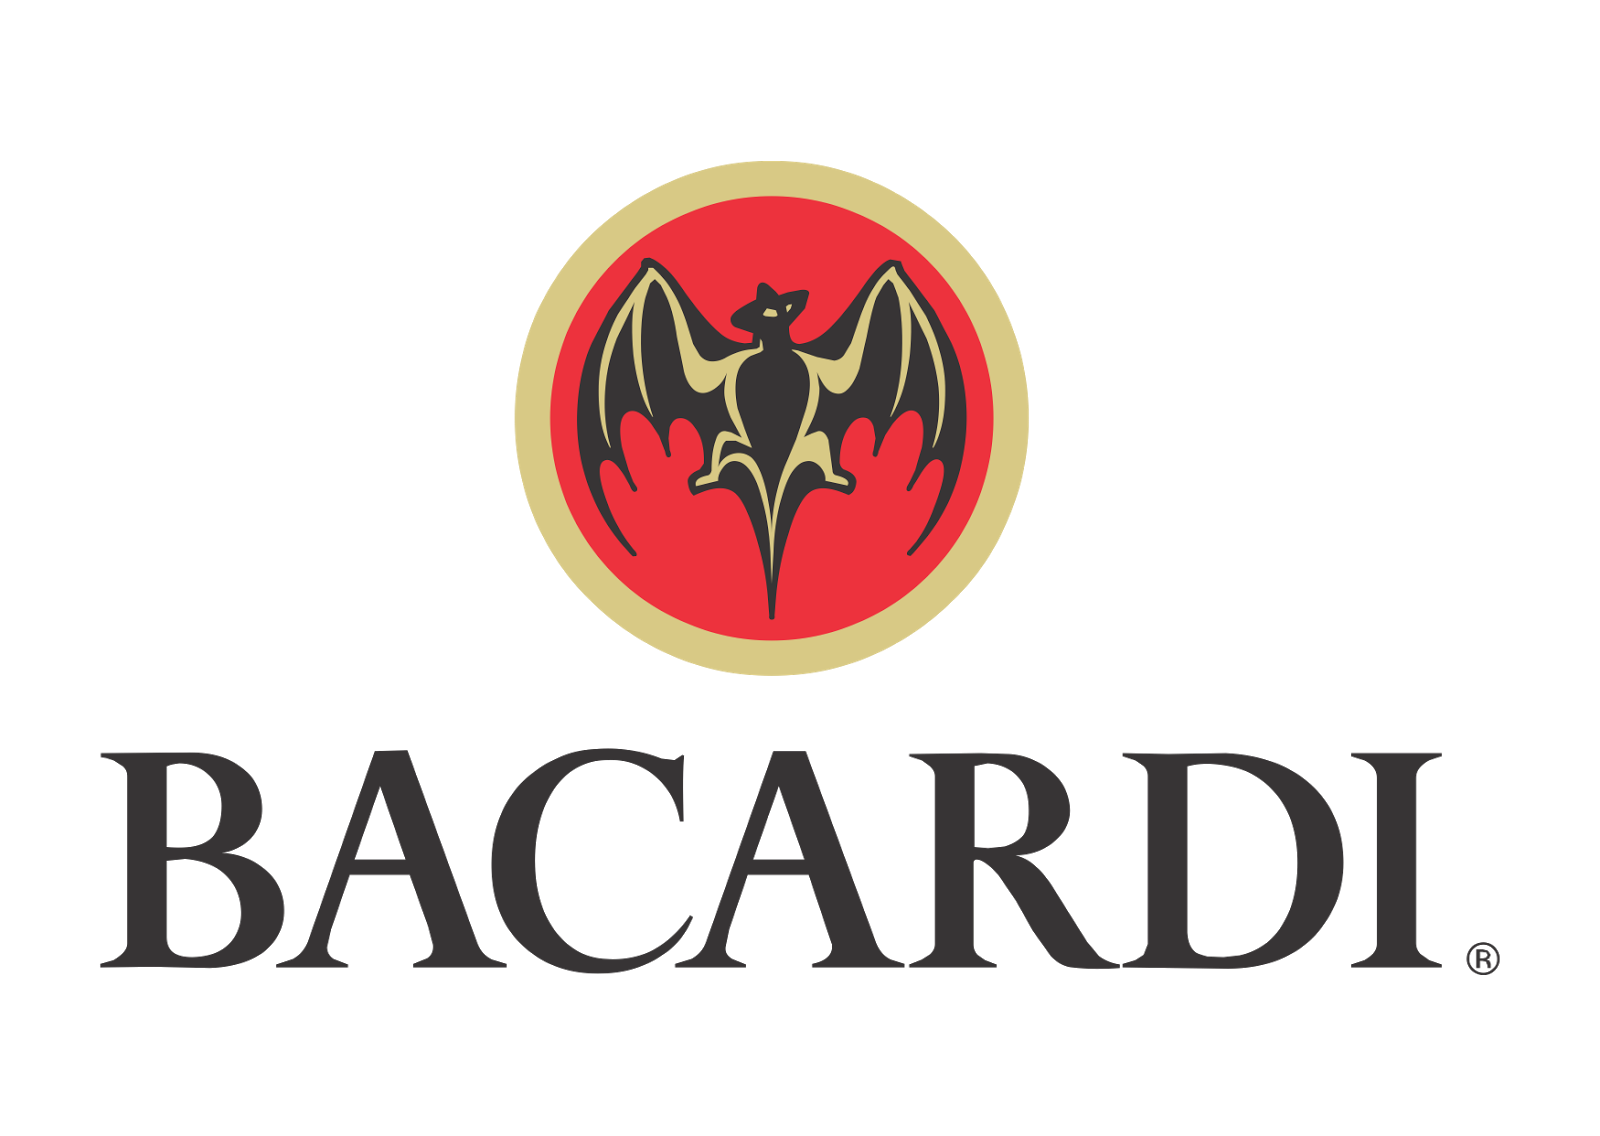 Bacardi logo.png